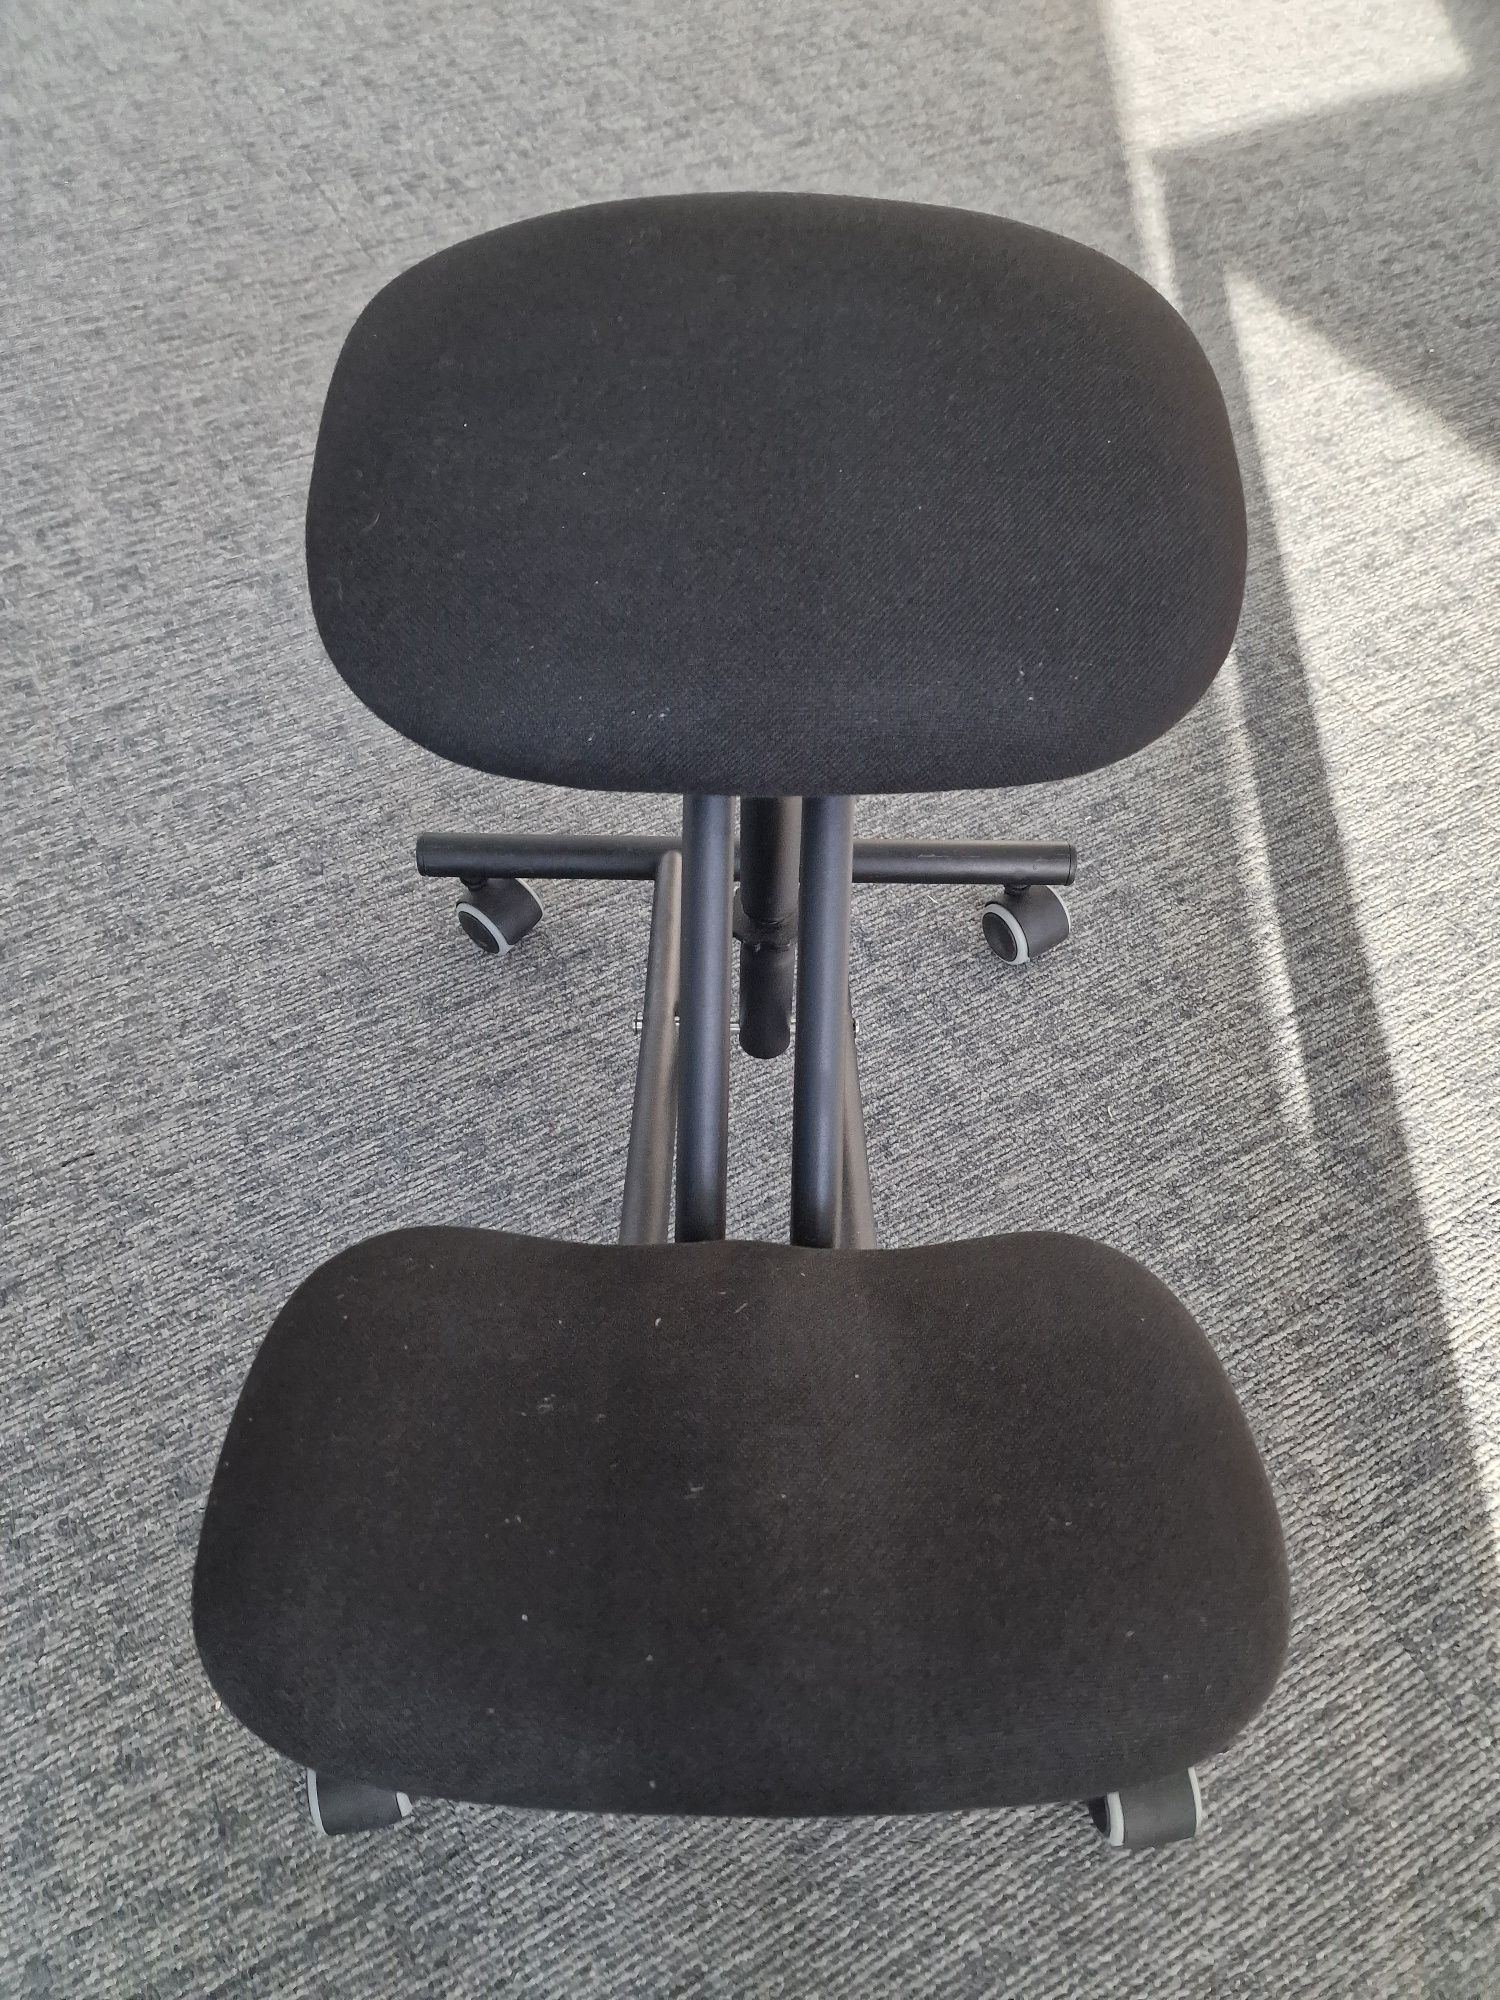 Klękosiad/ klęcznik- krzesło profilkatyczno- rehabilitacyjne